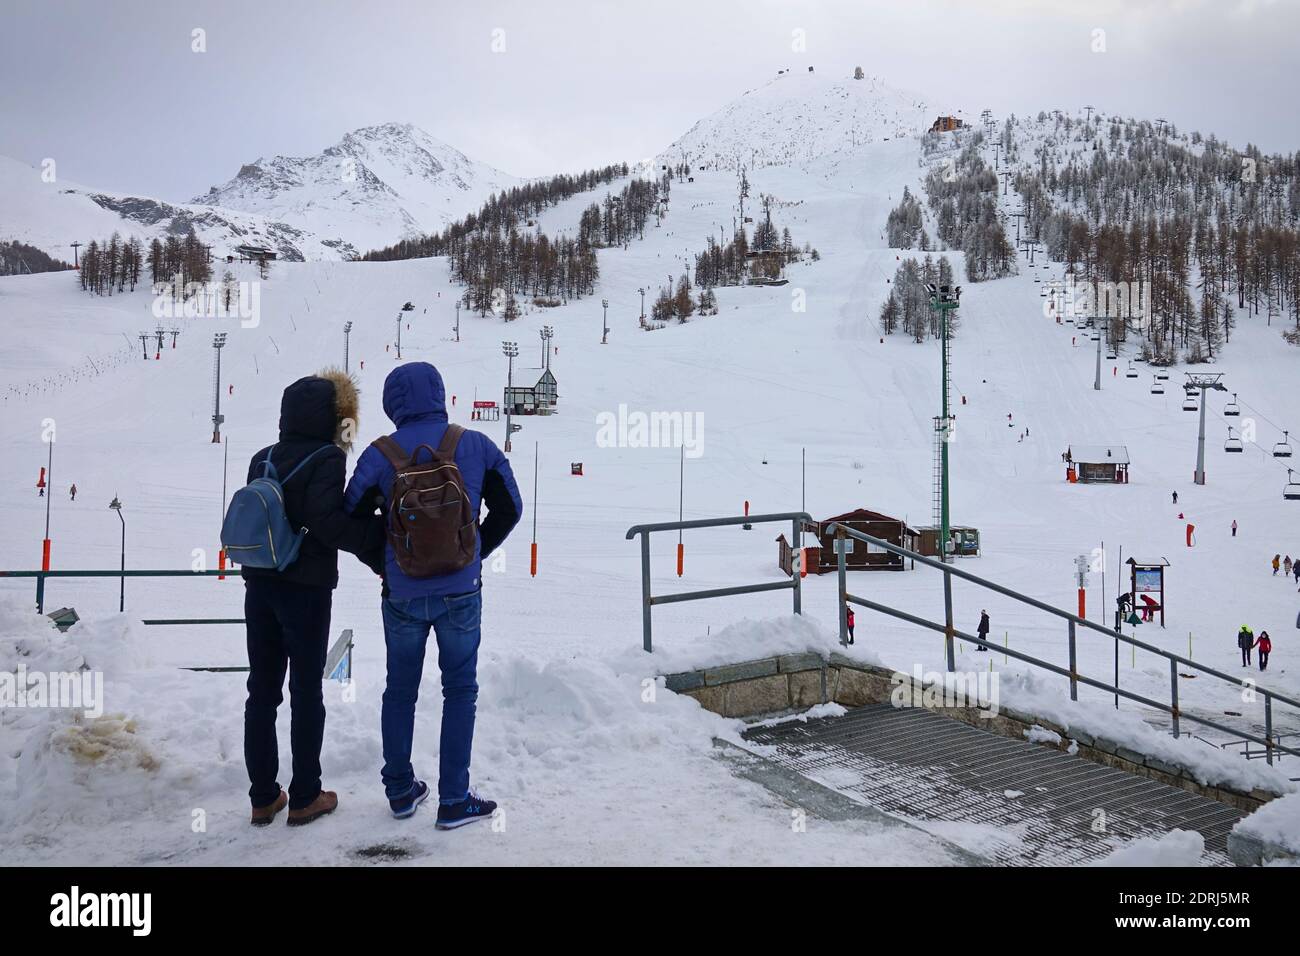 Las pistas de esquí cerraron debido a una pandemia en Navidad, la pareja mira las pendientes desoladamente vacías. Sestriere, Italia - Diciembre 2020 Foto de stock